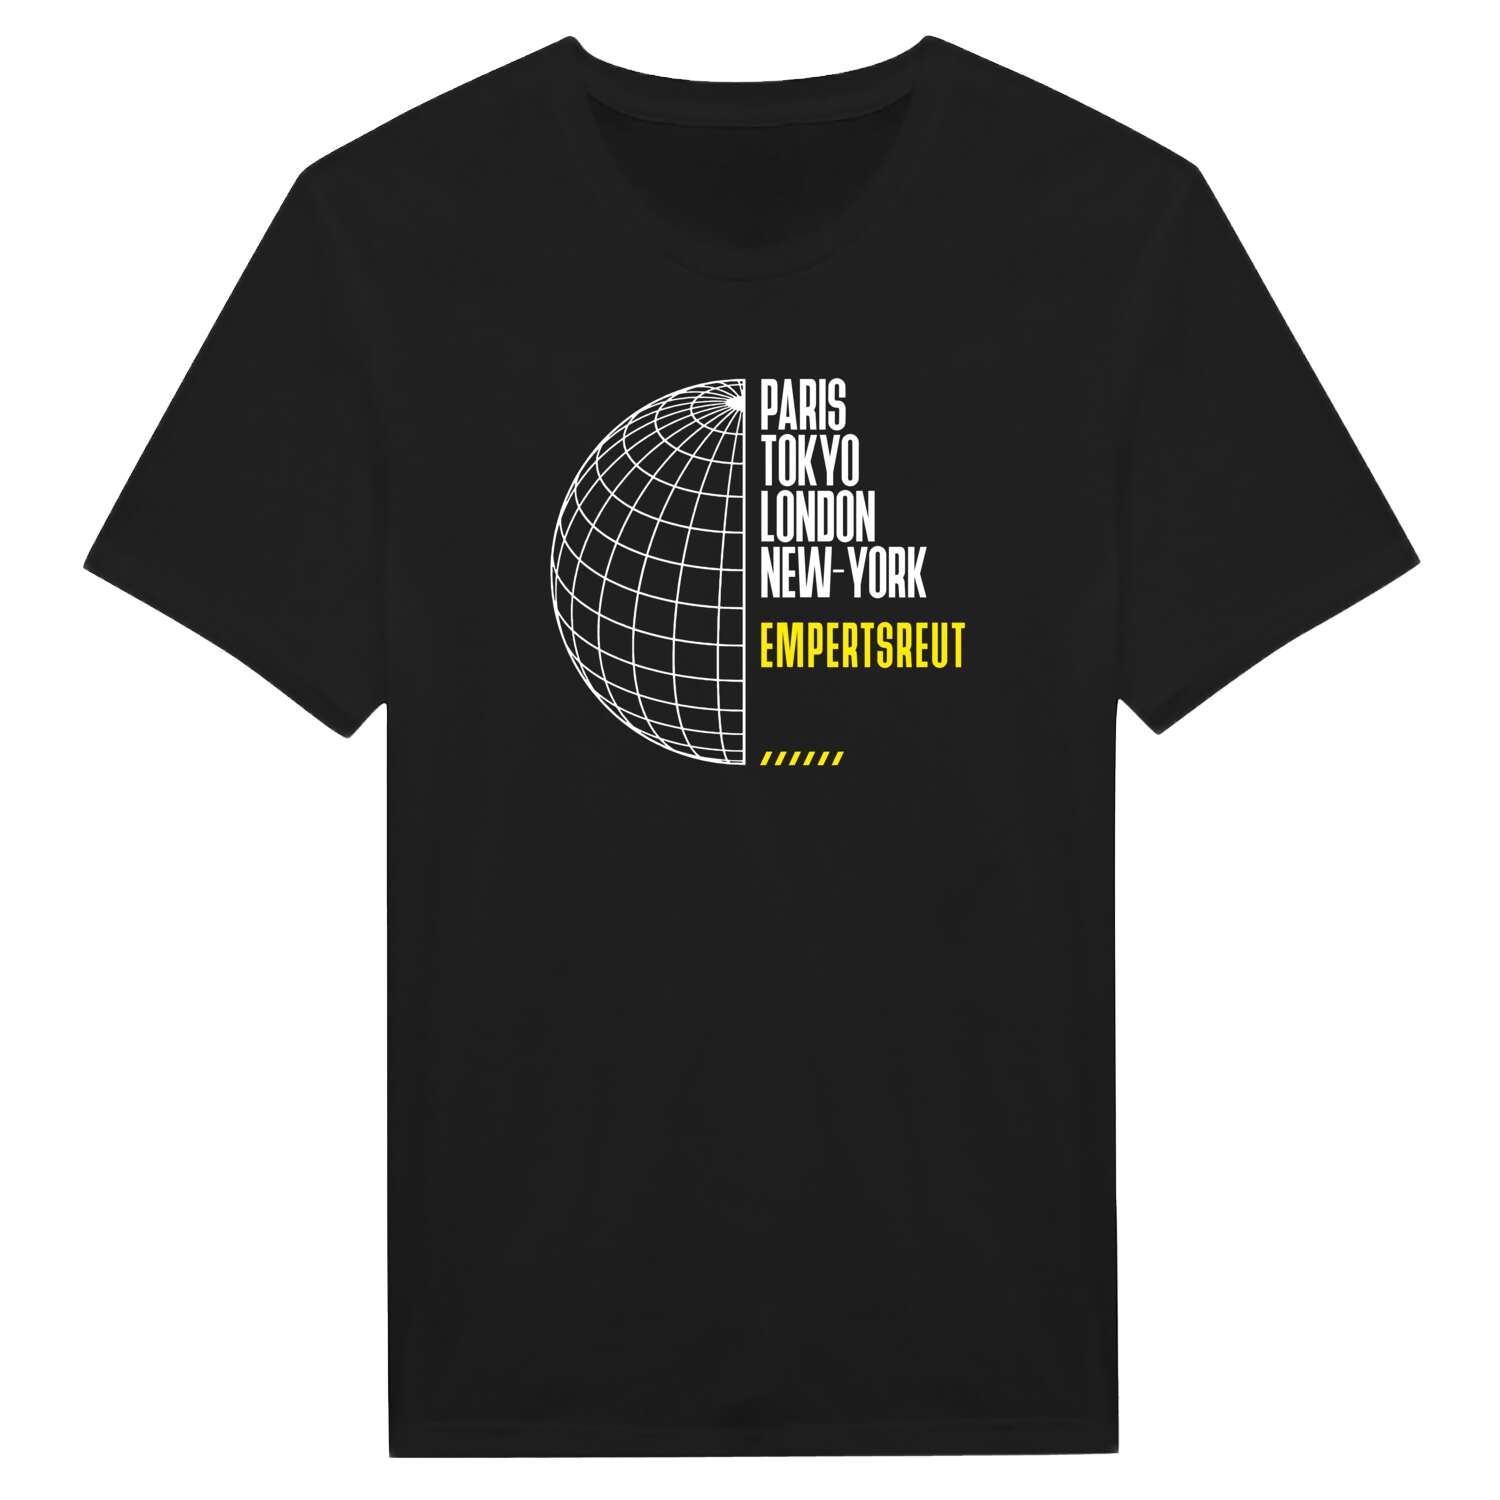 Empertsreut T-Shirt »Paris Tokyo London«